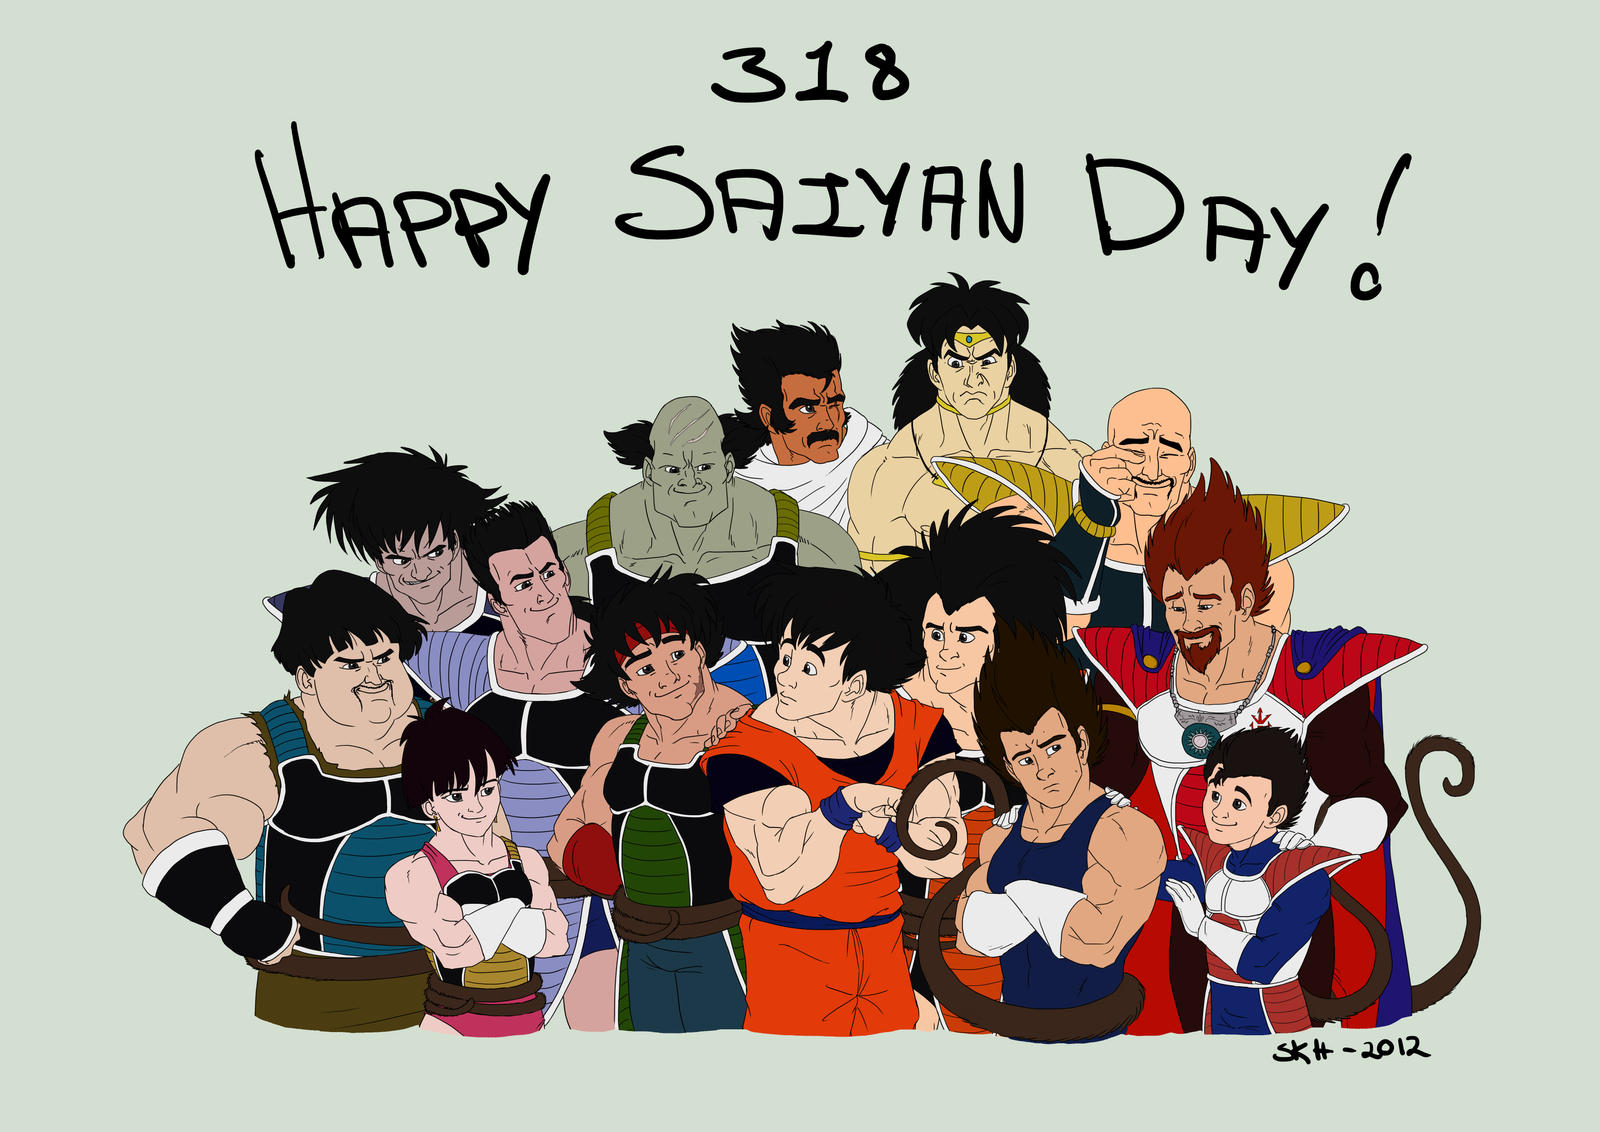 Saiyan Day 2012